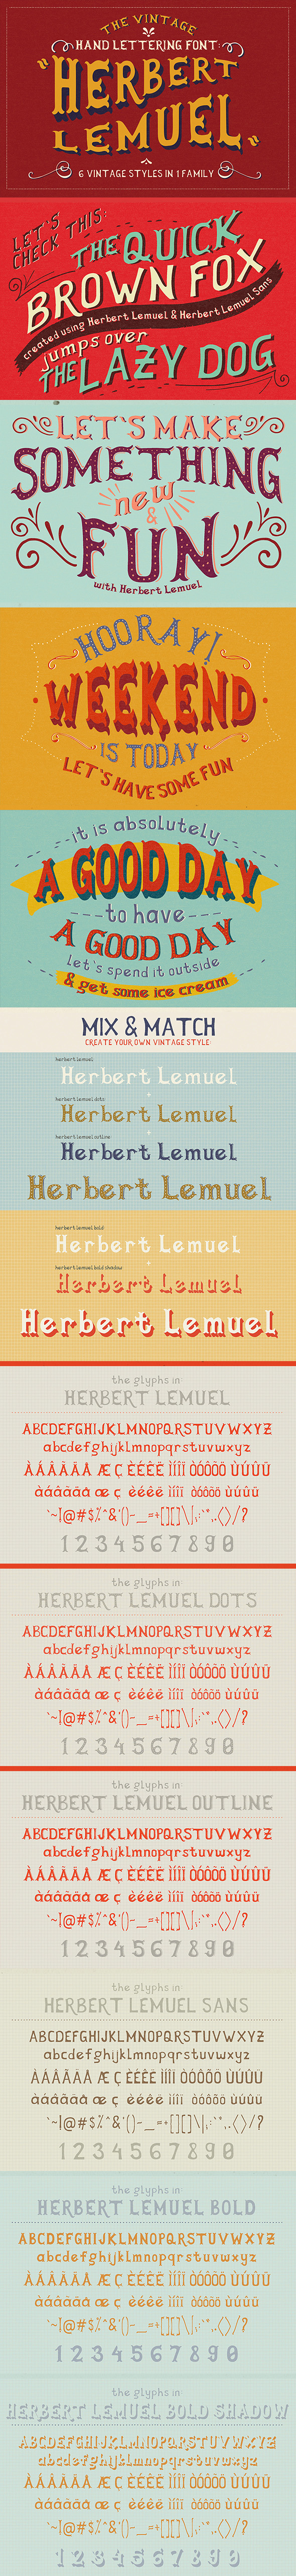 Herbert Lemuel